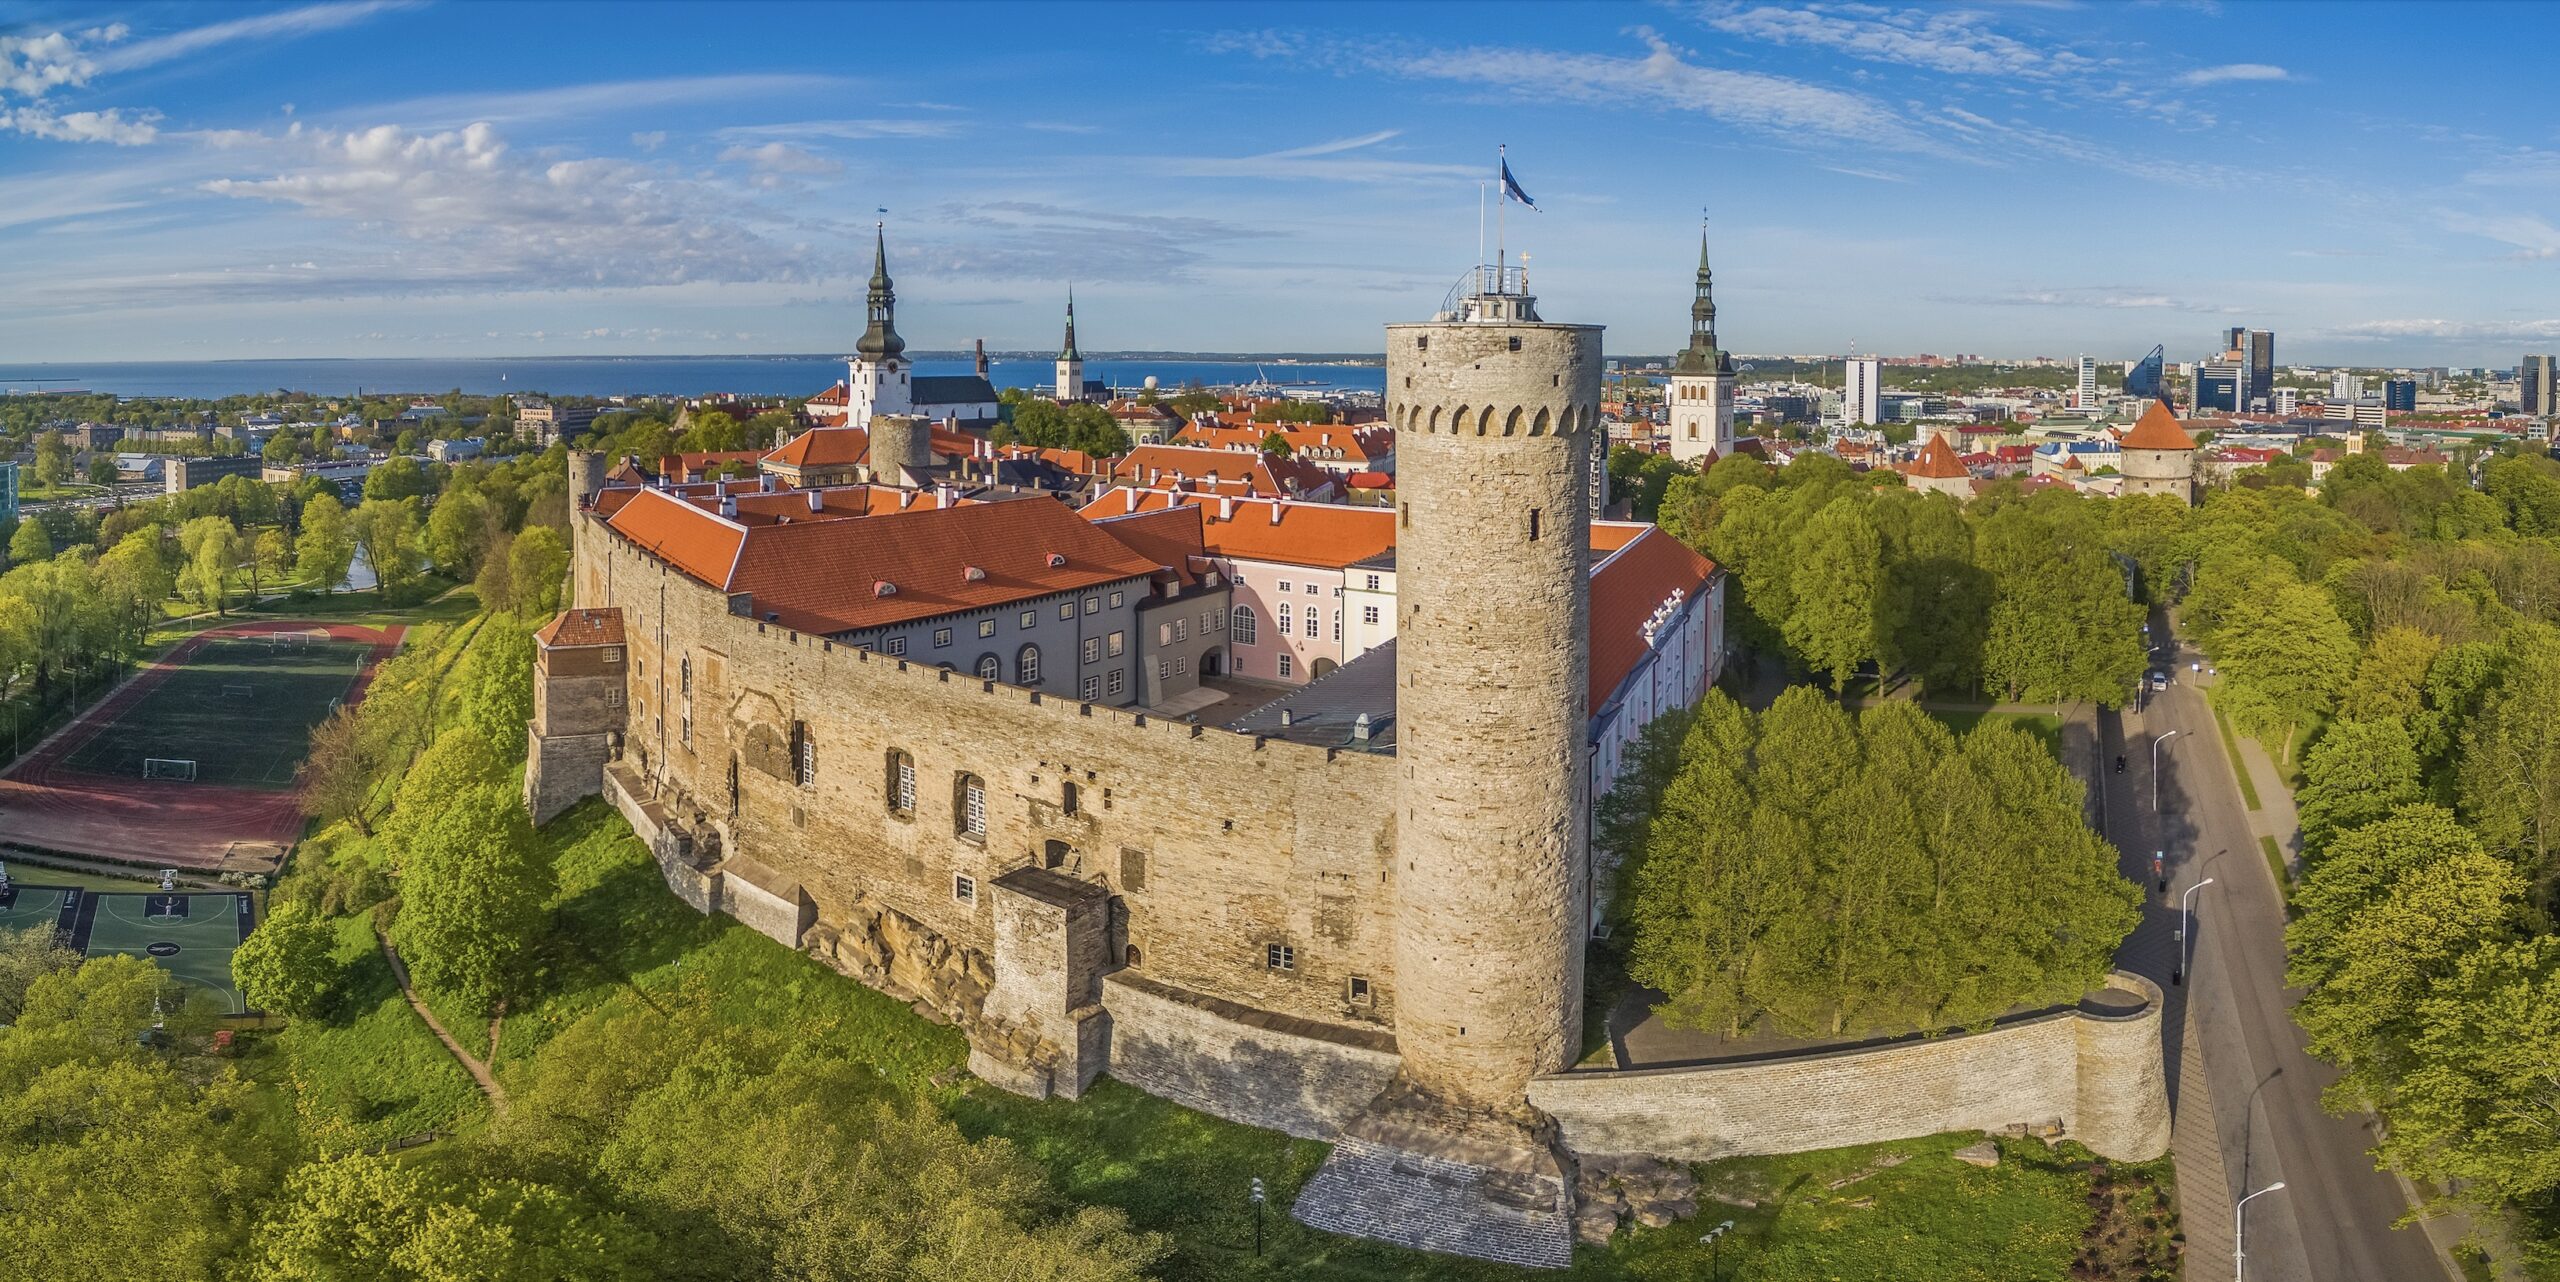 Photo by Kaupo Kalda & Tallinna Strateegiakeskuse ettevõtlusteenistuse turismiosakond.